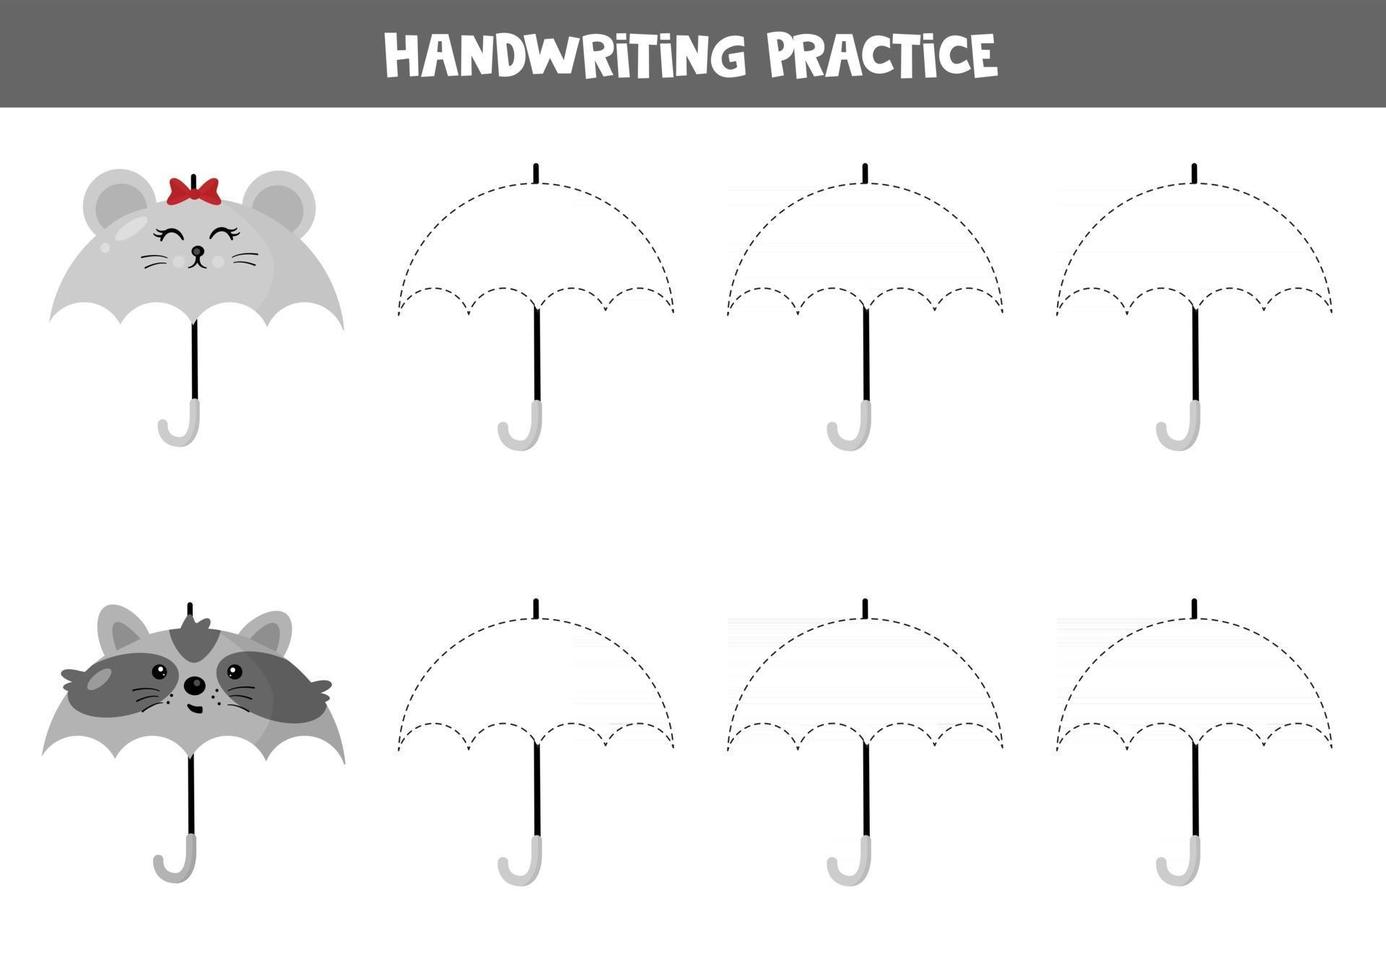 planilha educacional para crianças pré-escolares. prática de caligrafia. rastrear guarda-chuvas. vetor